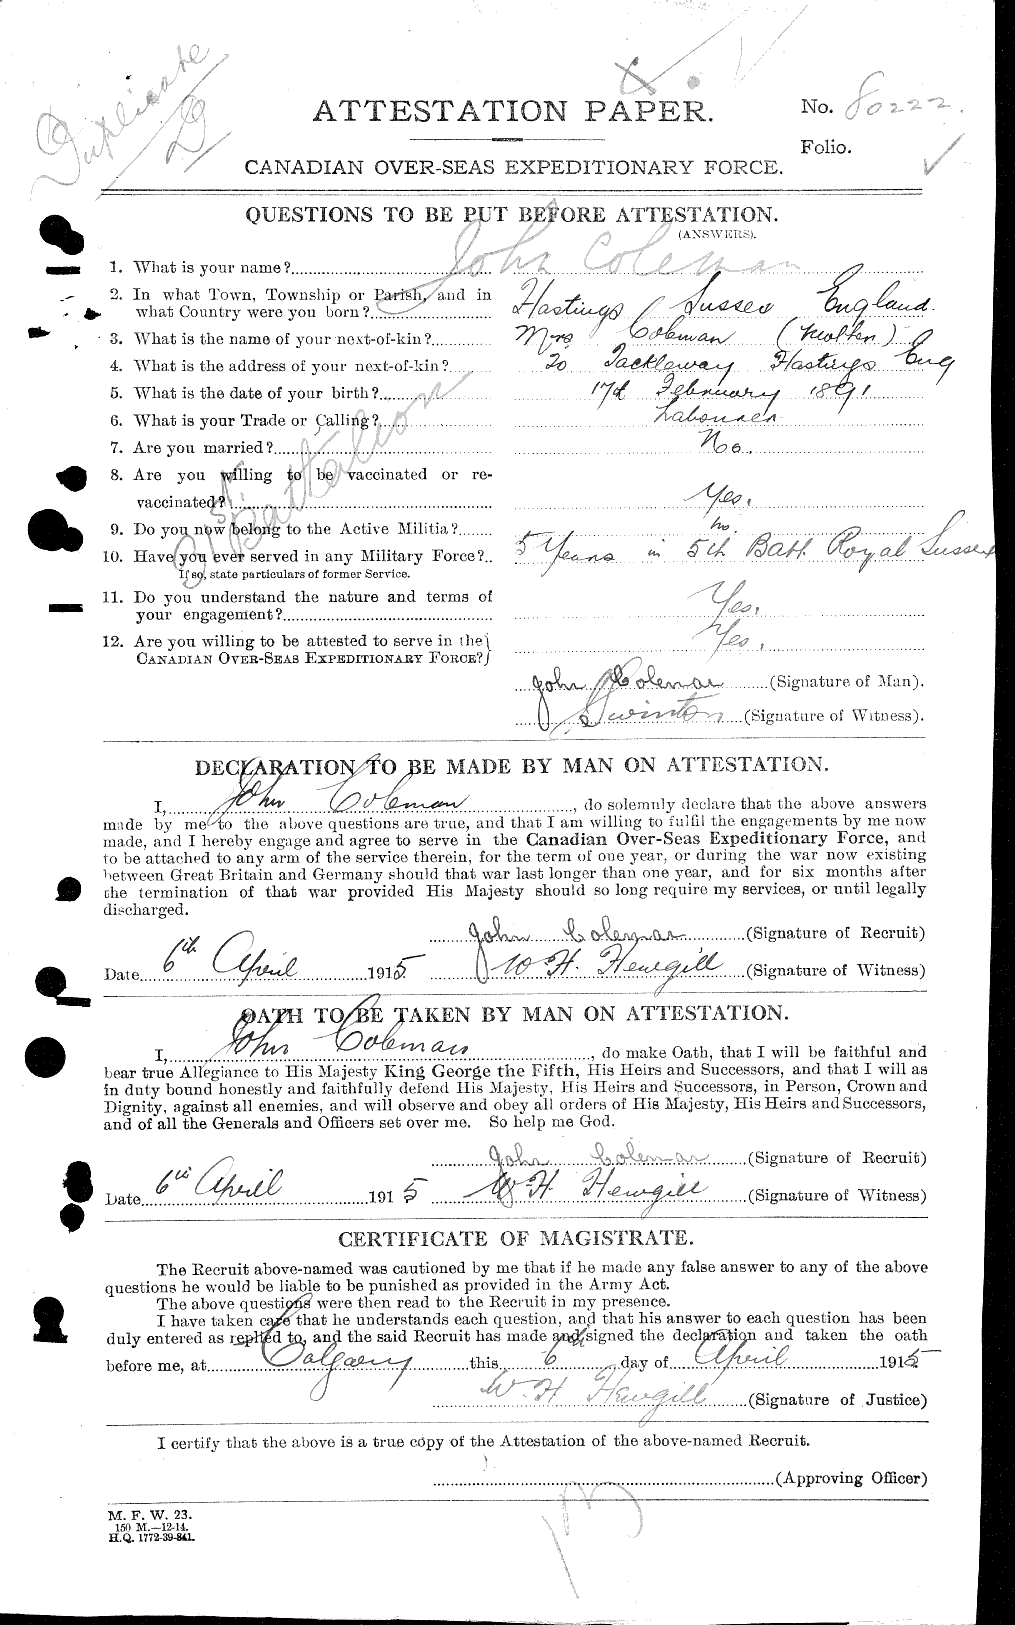 Dossiers du Personnel de la Première Guerre mondiale - CEC 028197a